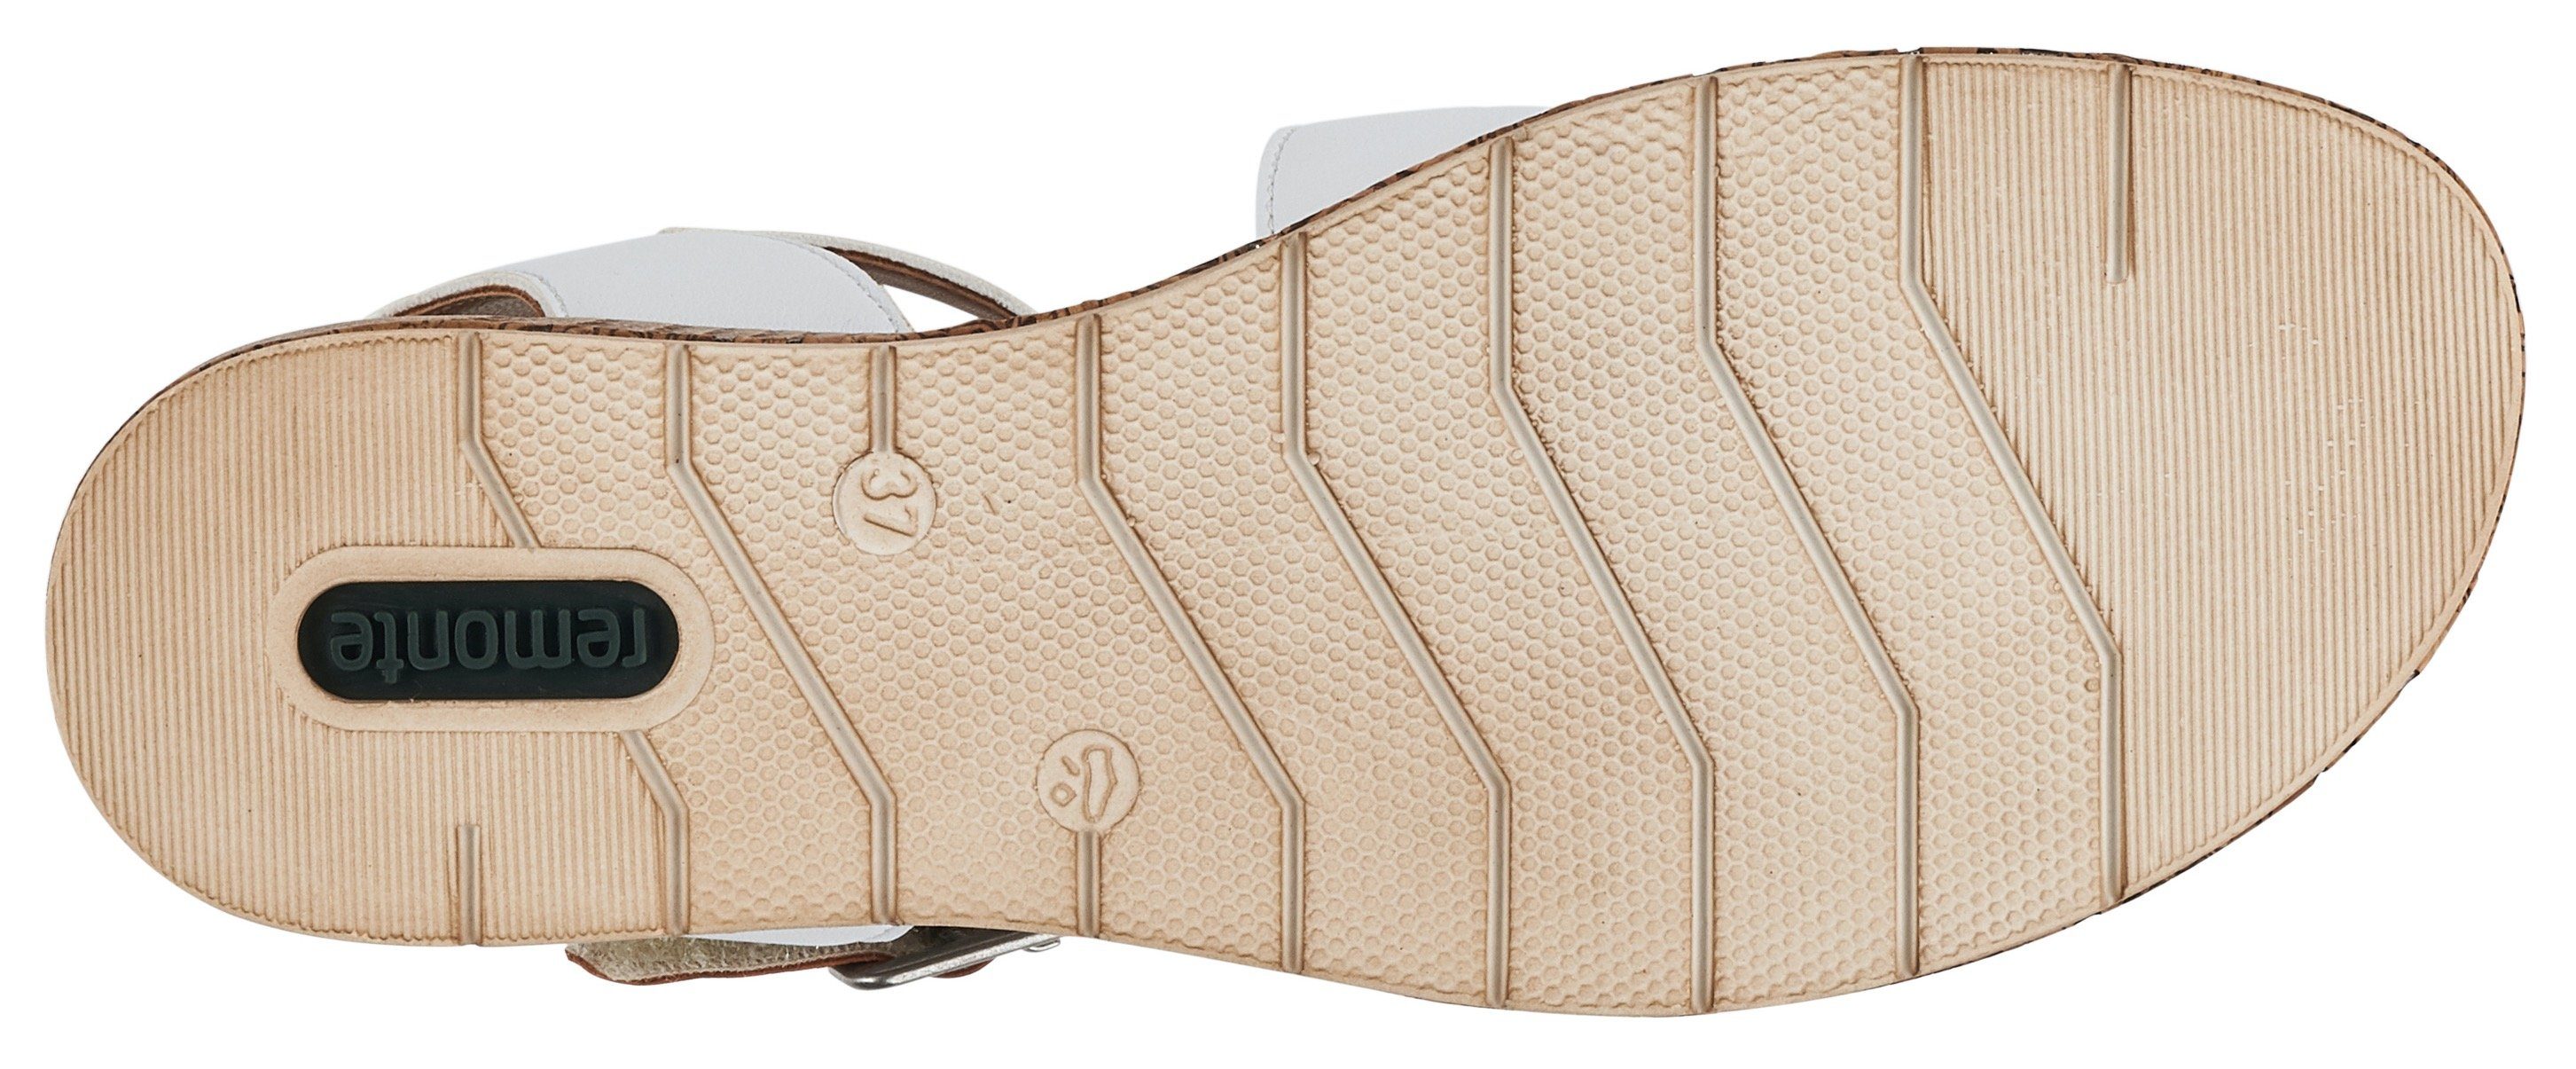 Klettverschlüssen Sandalette Remonte mit weiß-kombiniert